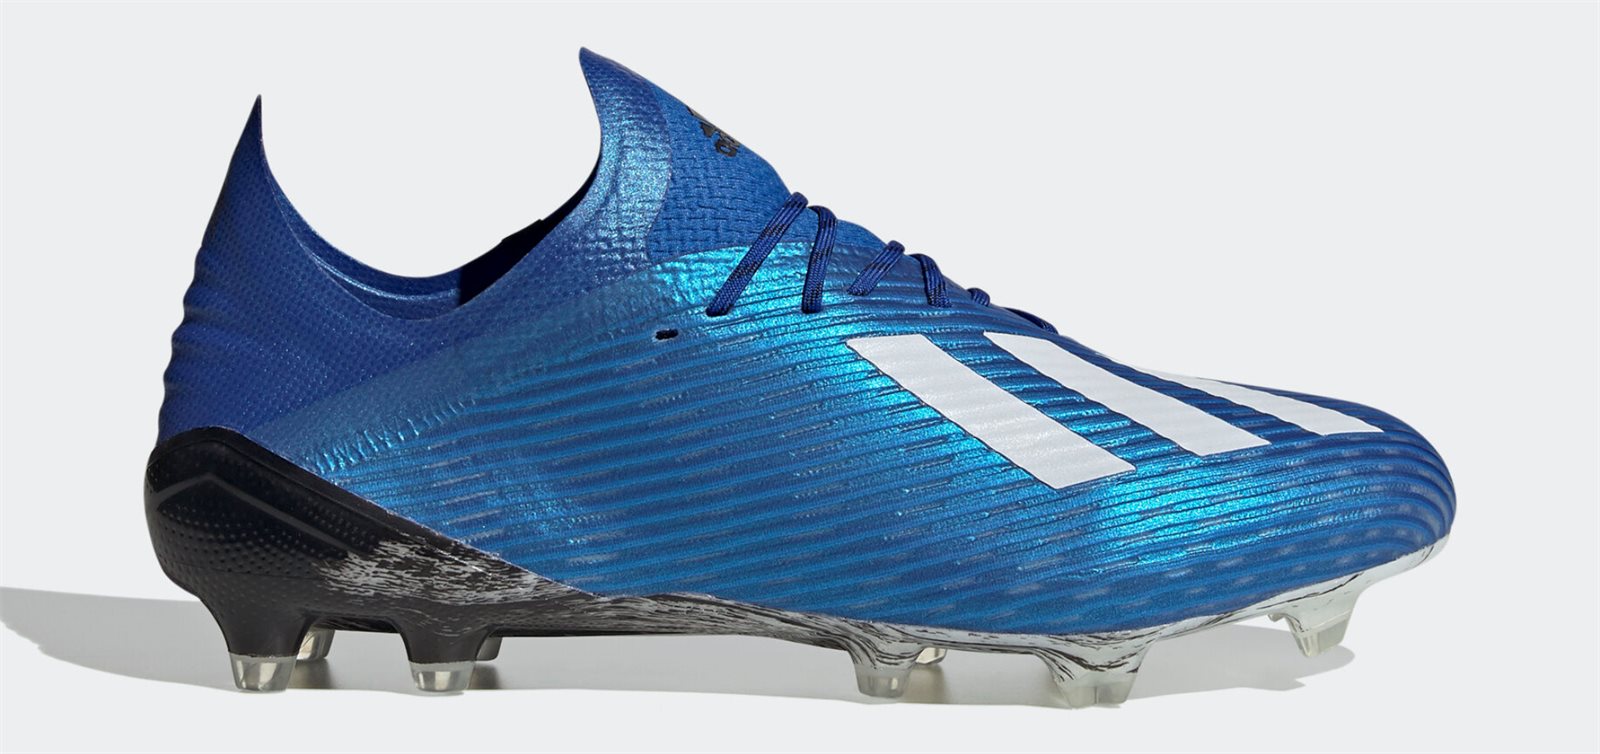 Giày đá bóng Adidas X19.1 siêu nhẹ với thiết kế da mỏng và đế có chất liệu nhẹ